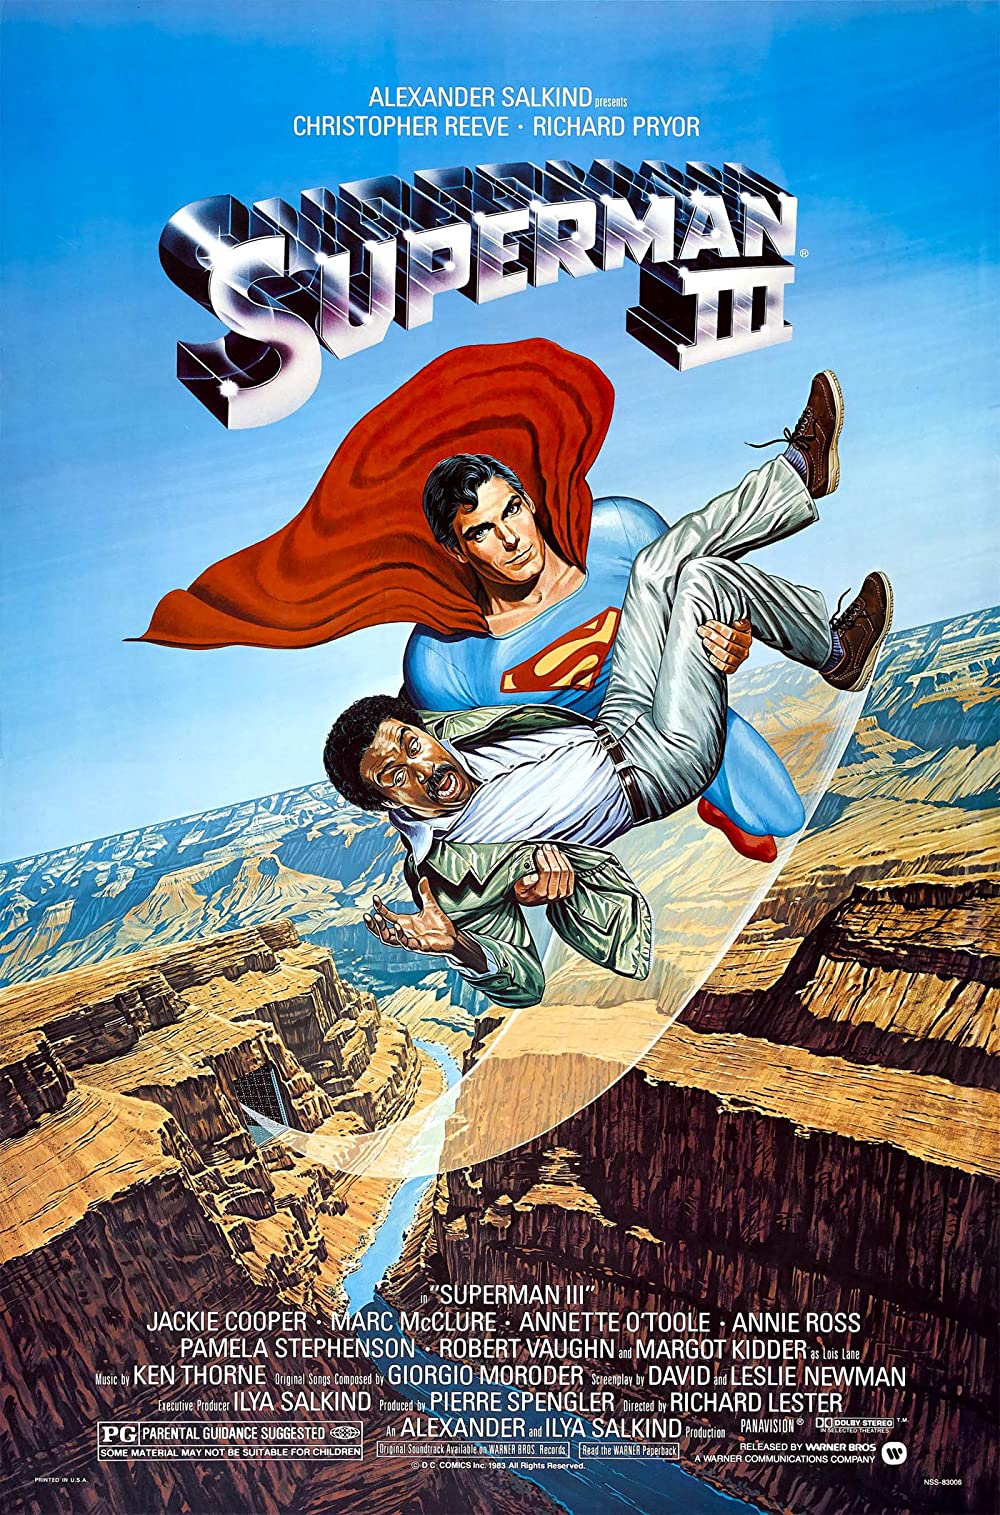 ดูหนังออนไลน์ฟรี Superman III ซูเปอร์แมน รีเทิร์น III